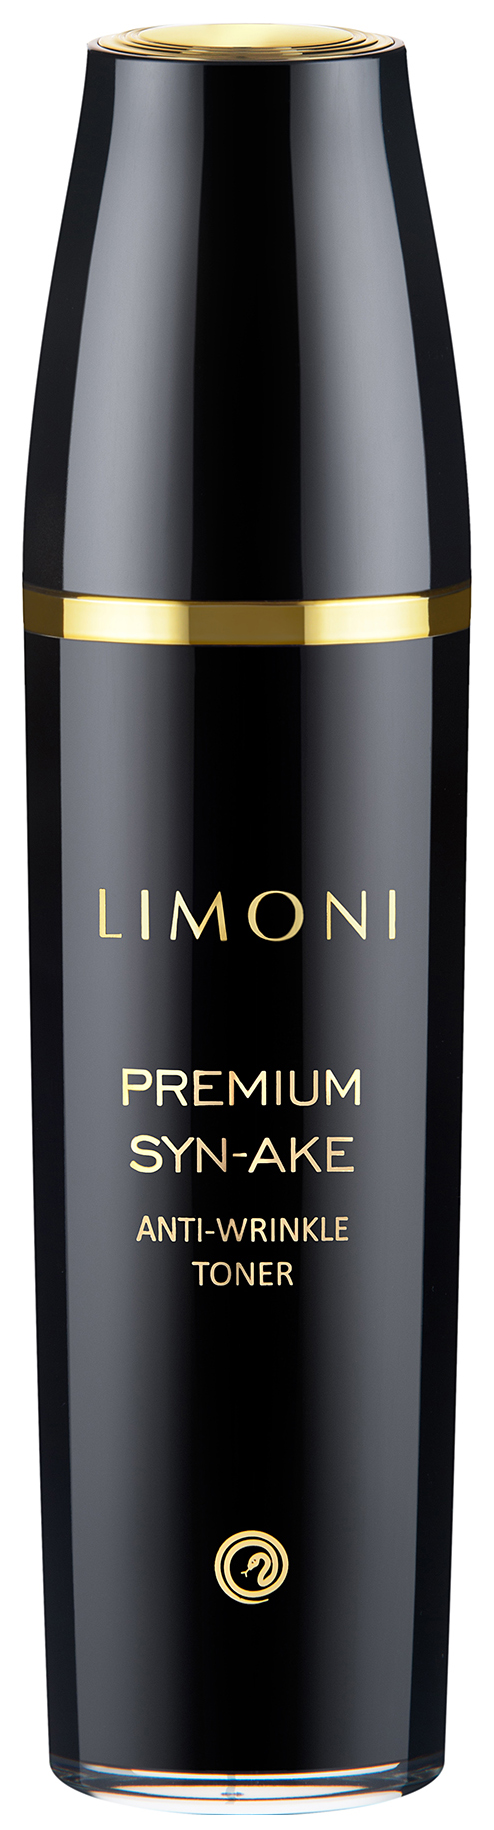 Тонер для лица Limoni Premium Syn-Ake Anti-Wrinkle Toner 120 мл limoni увлажняющий бб крем для лица moisture bb cream spf 27 тон 02 15 мл